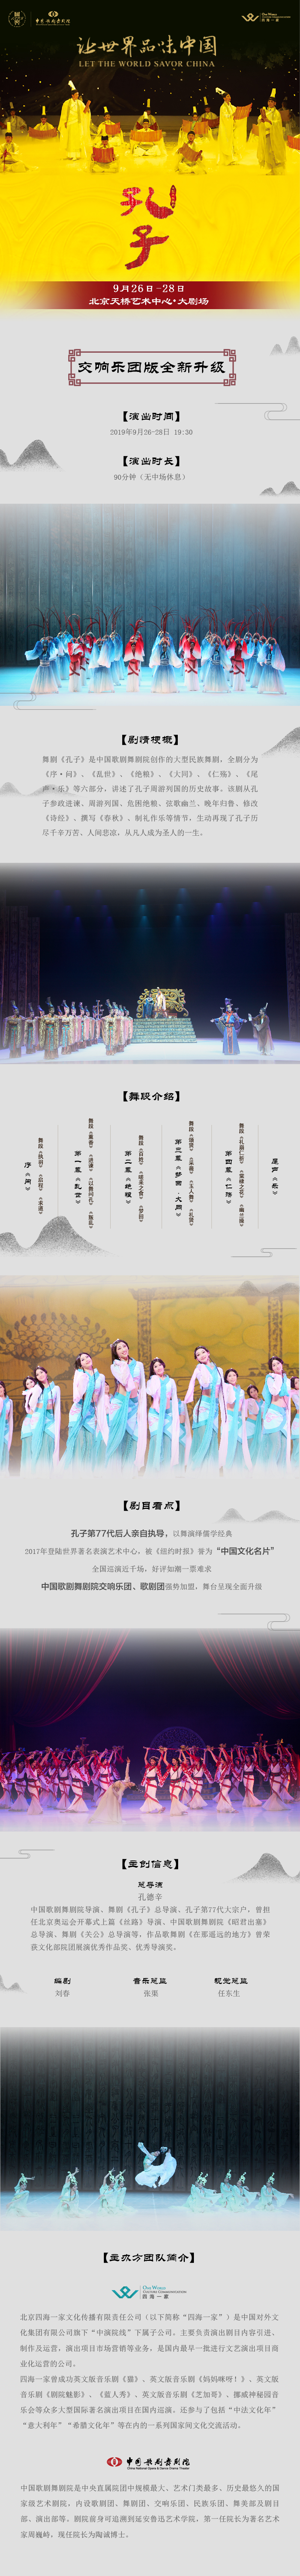 中国歌剧舞剧院舞剧《孔子》交响乐队版